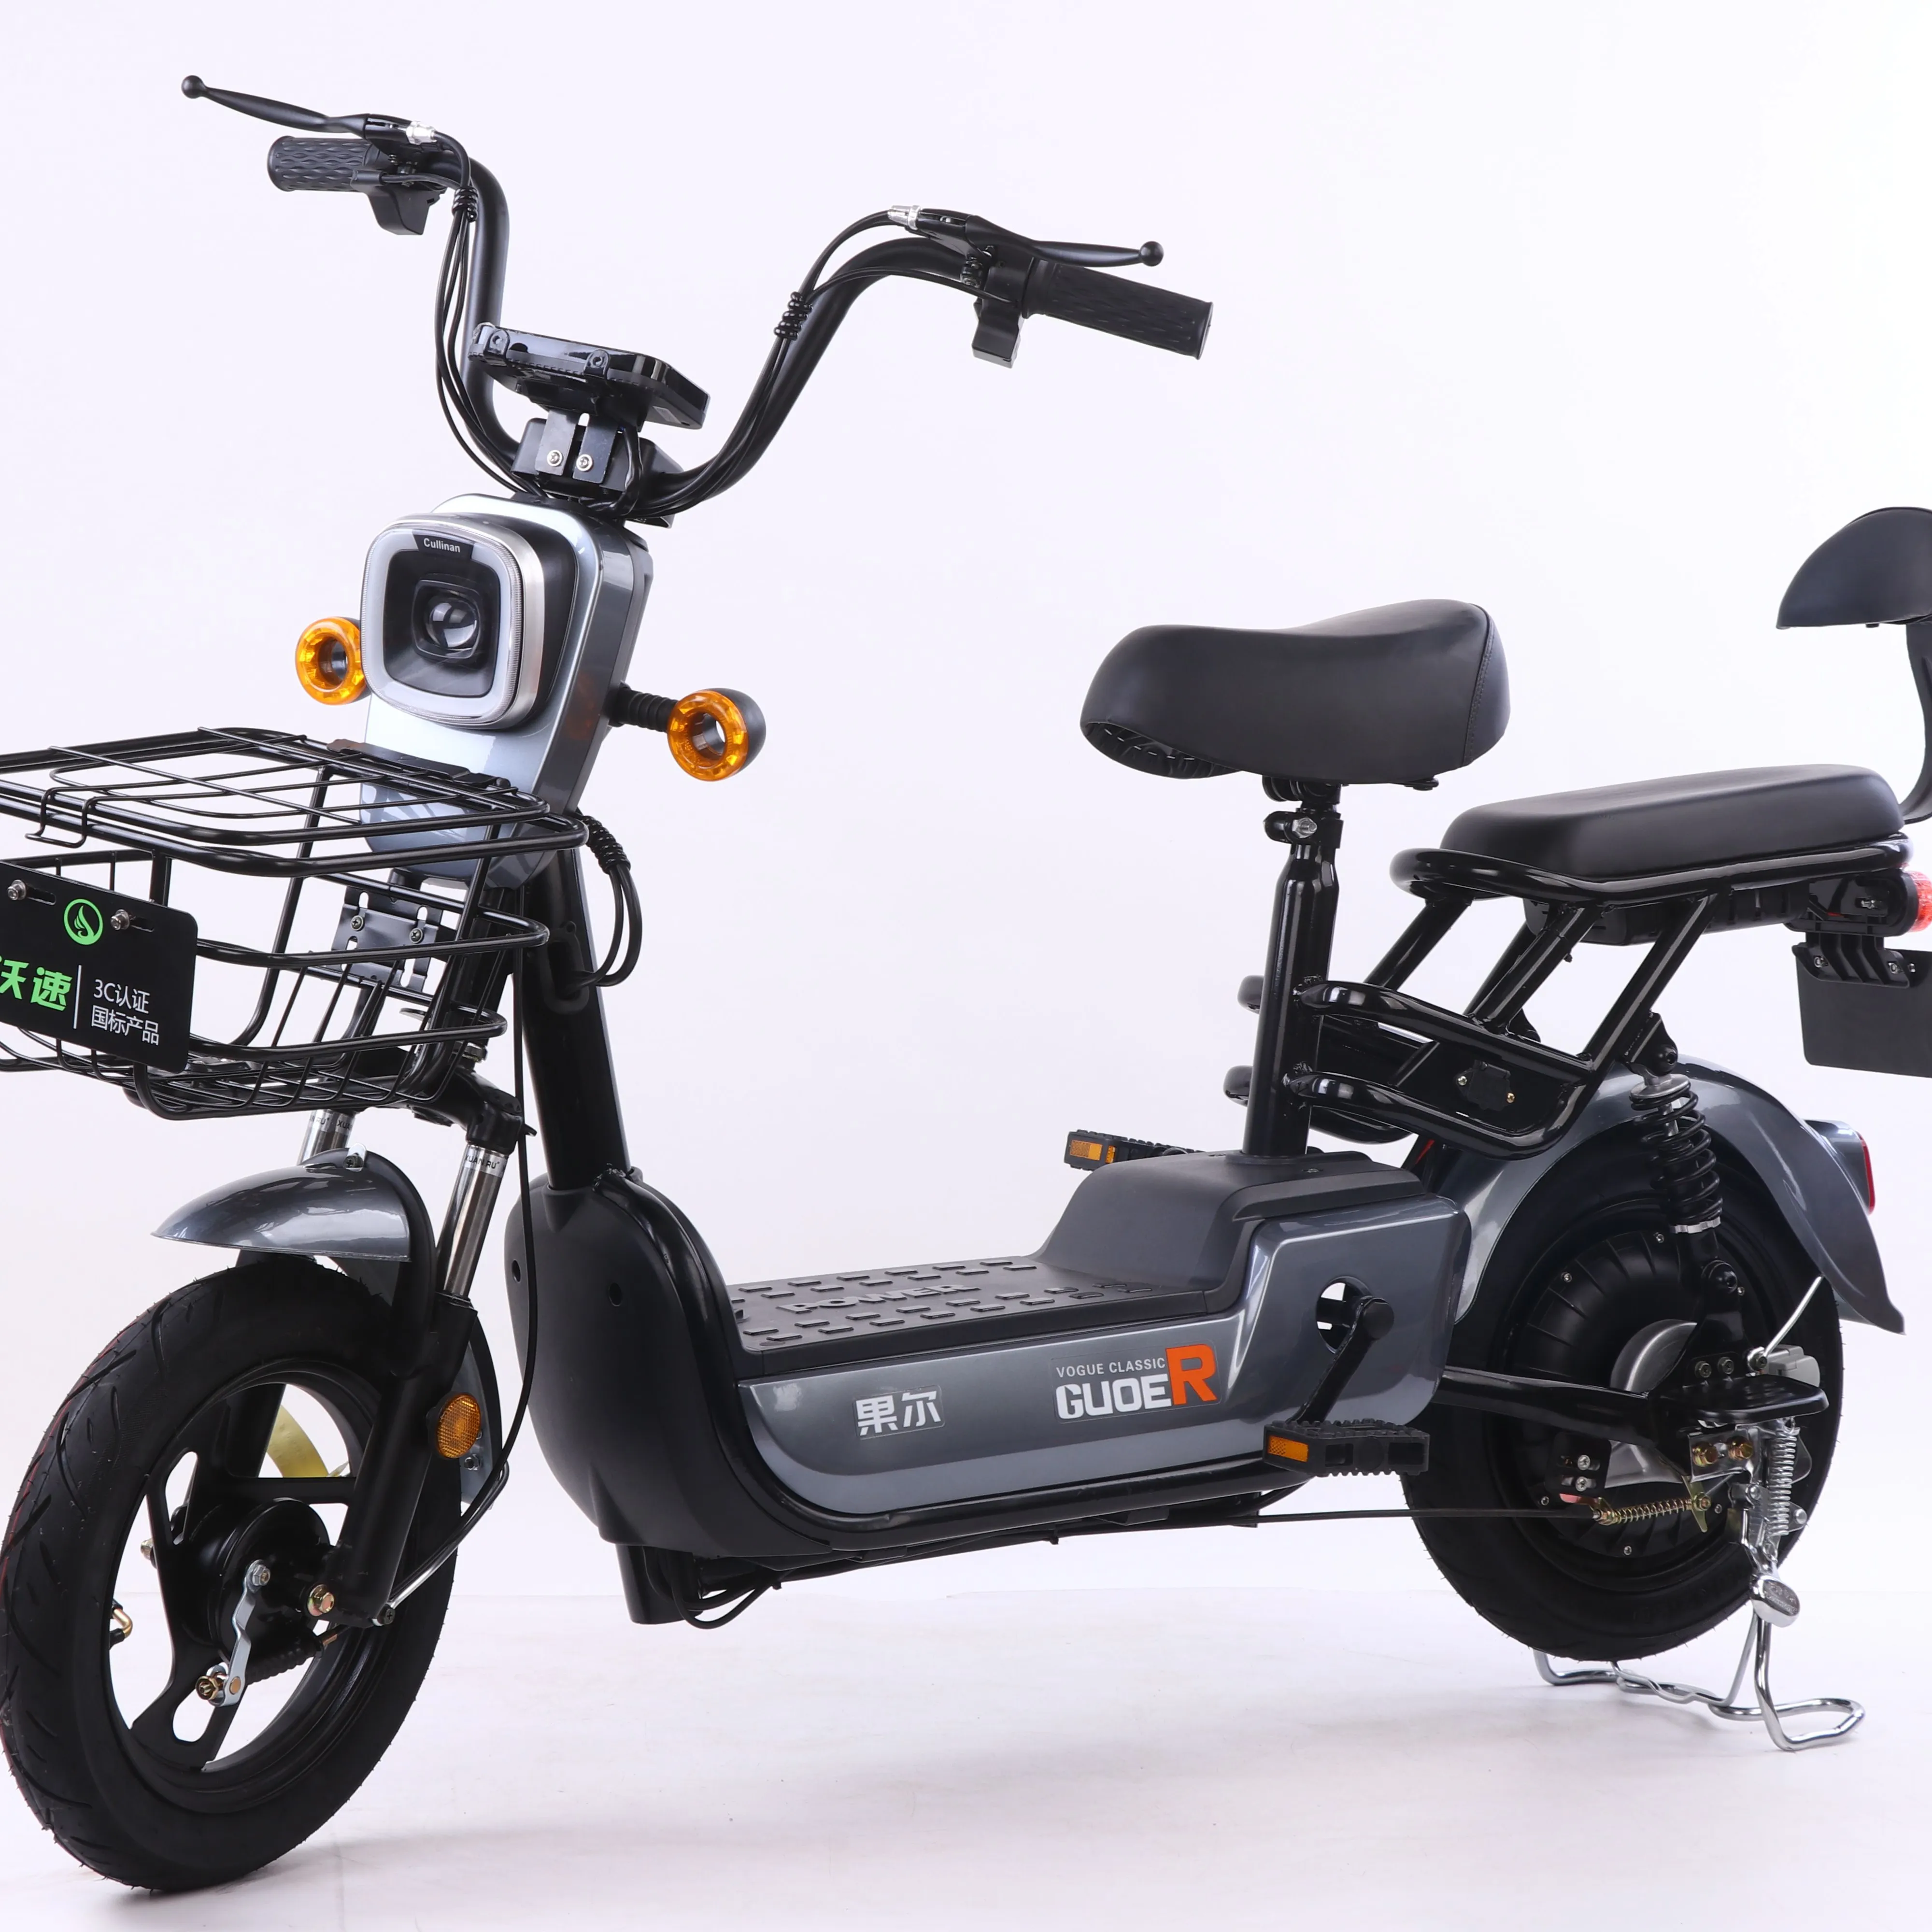 2020 Лидер продаж 2-Местный Электрический велосипед с 48v 12a 350w 2 колеса, фара для электровелосипеда в Электрический велосипед/электрический скутер, способный преодолевать Броды для продажи